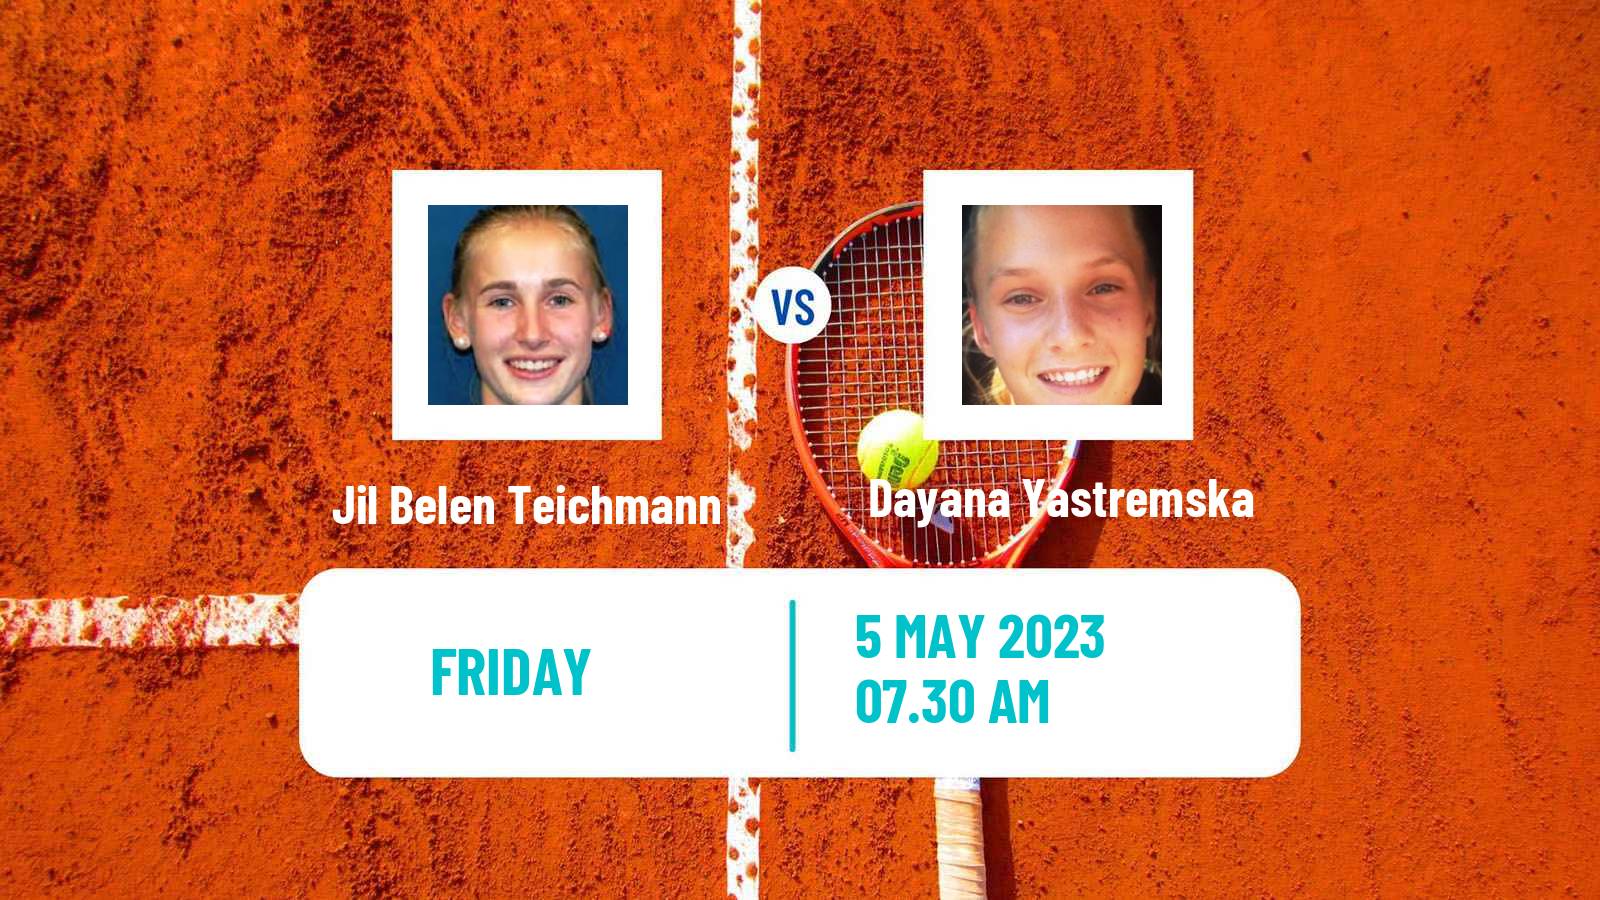 Tennis ATP Challenger Jil Belen Teichmann - Dayana Yastremska